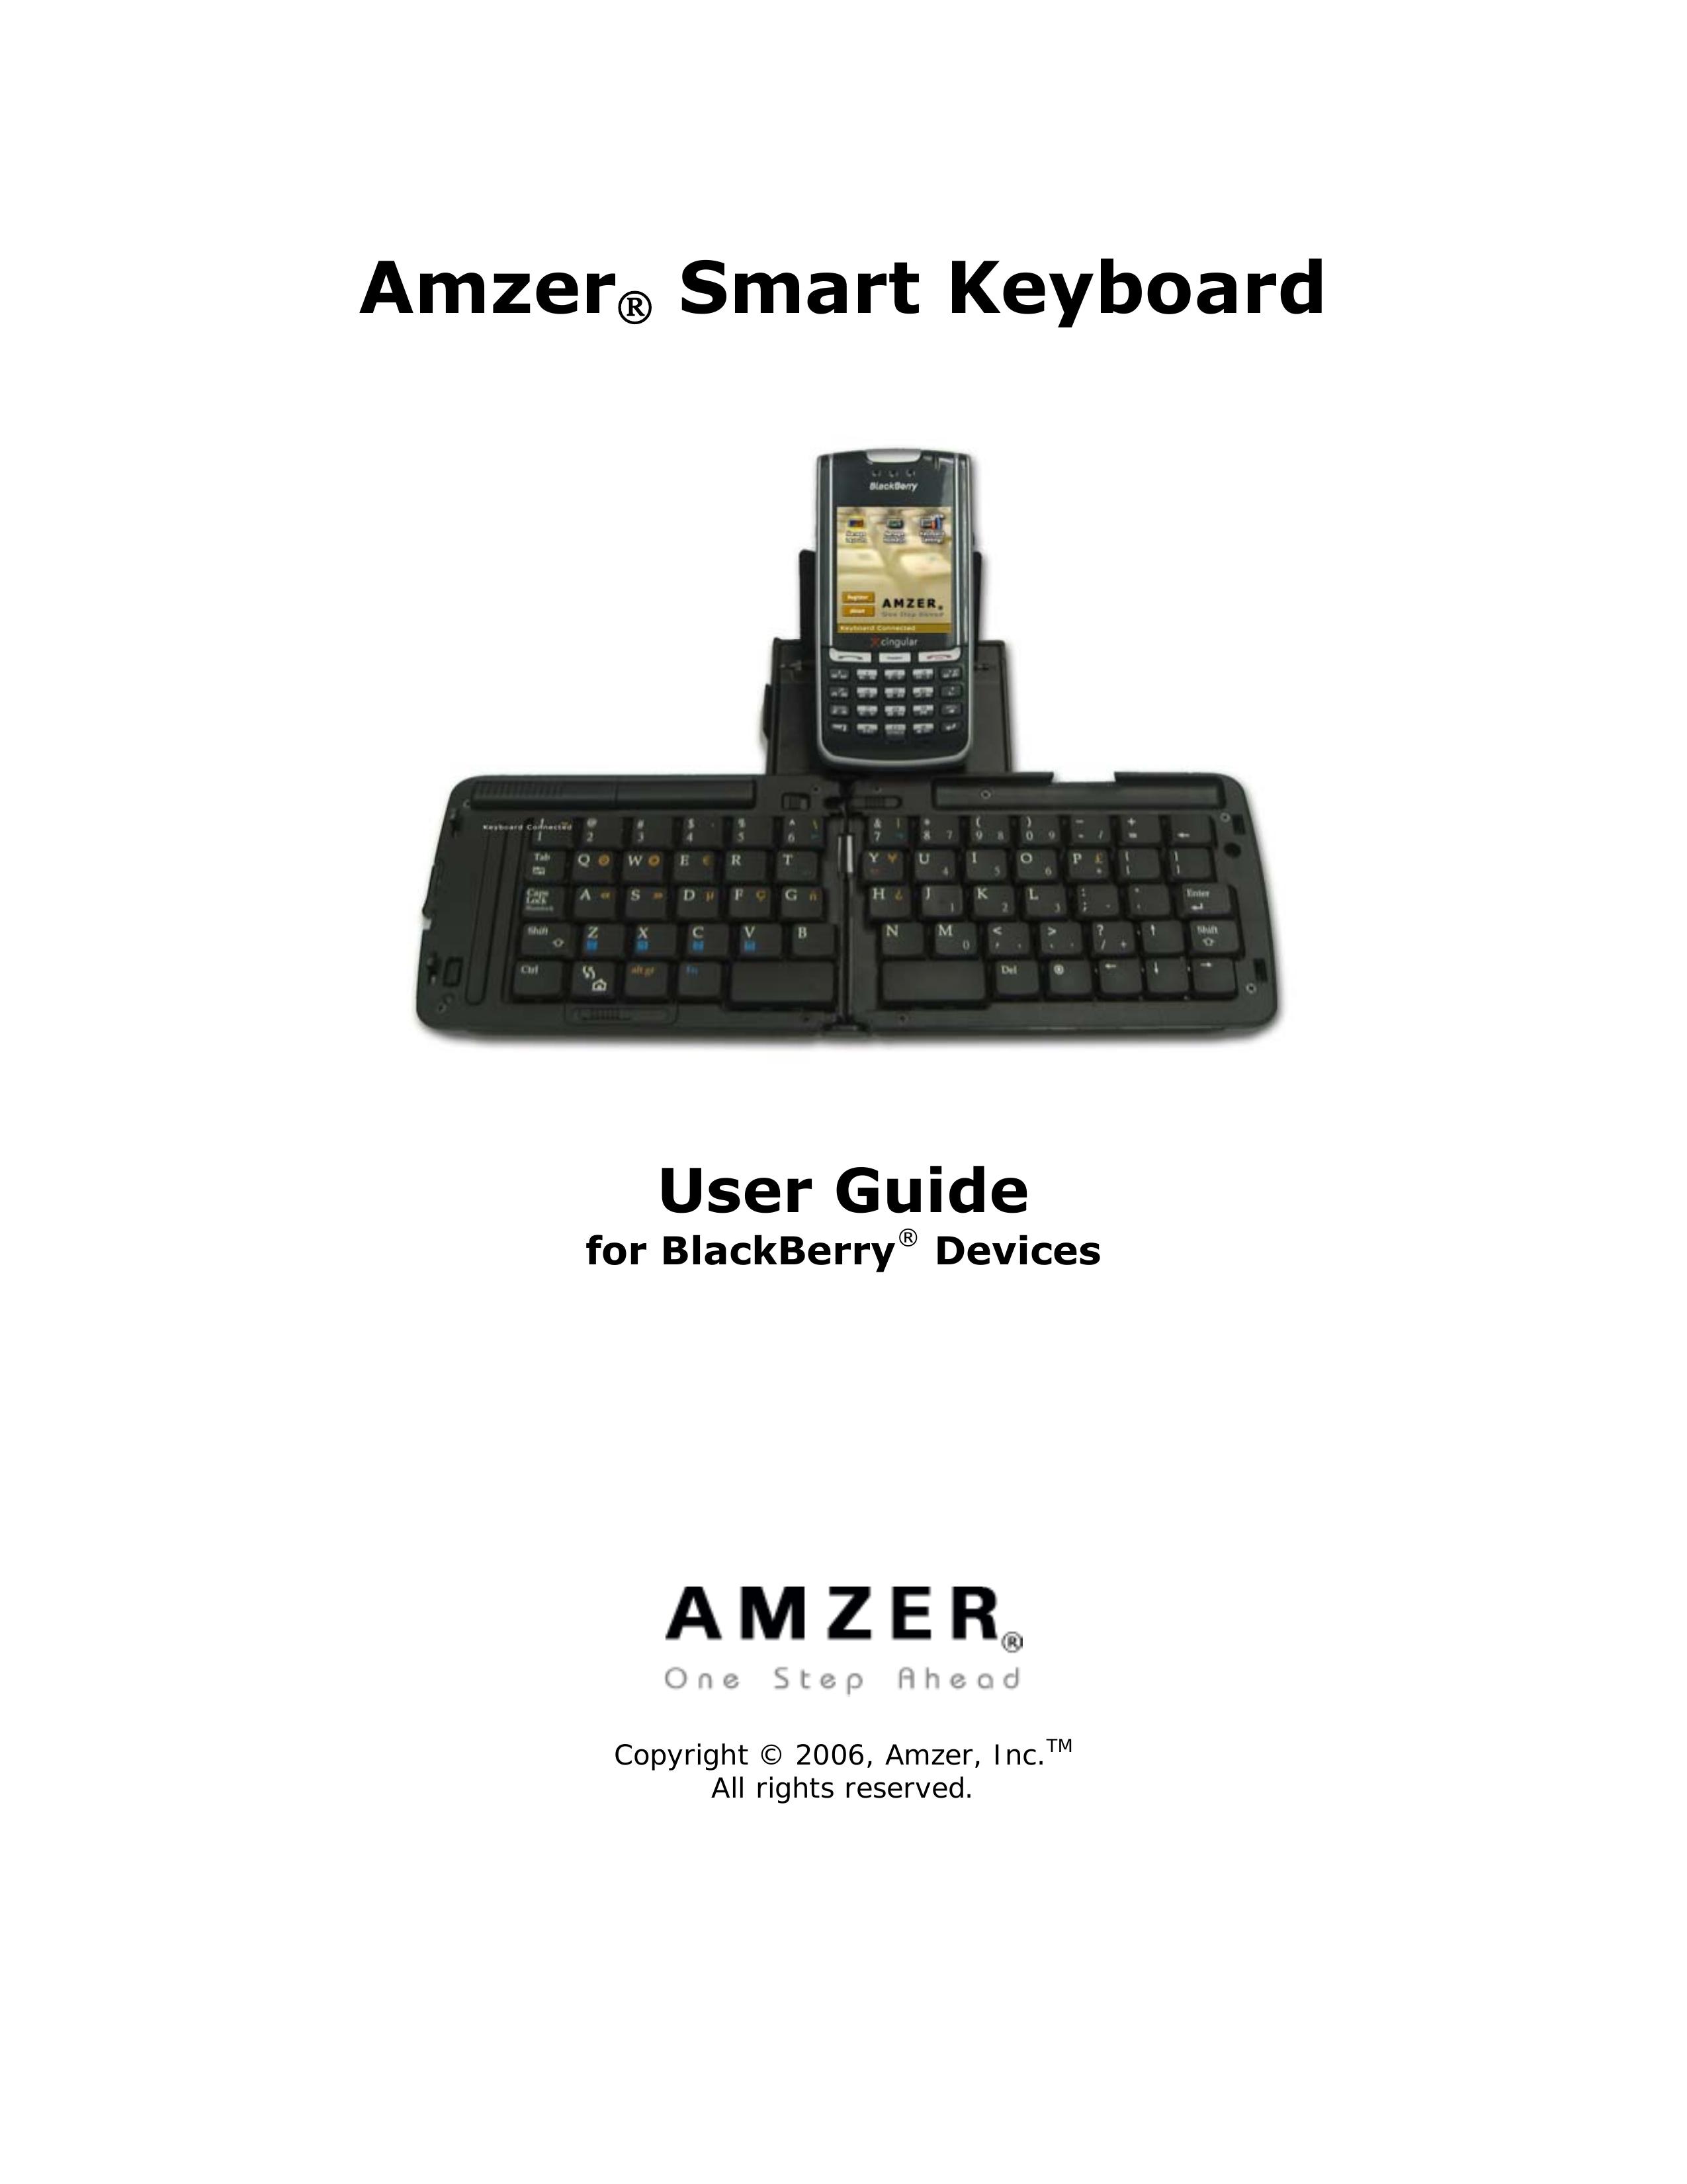 Cingular Amzer Smart Keyboard Electronic Keyboard User Manual